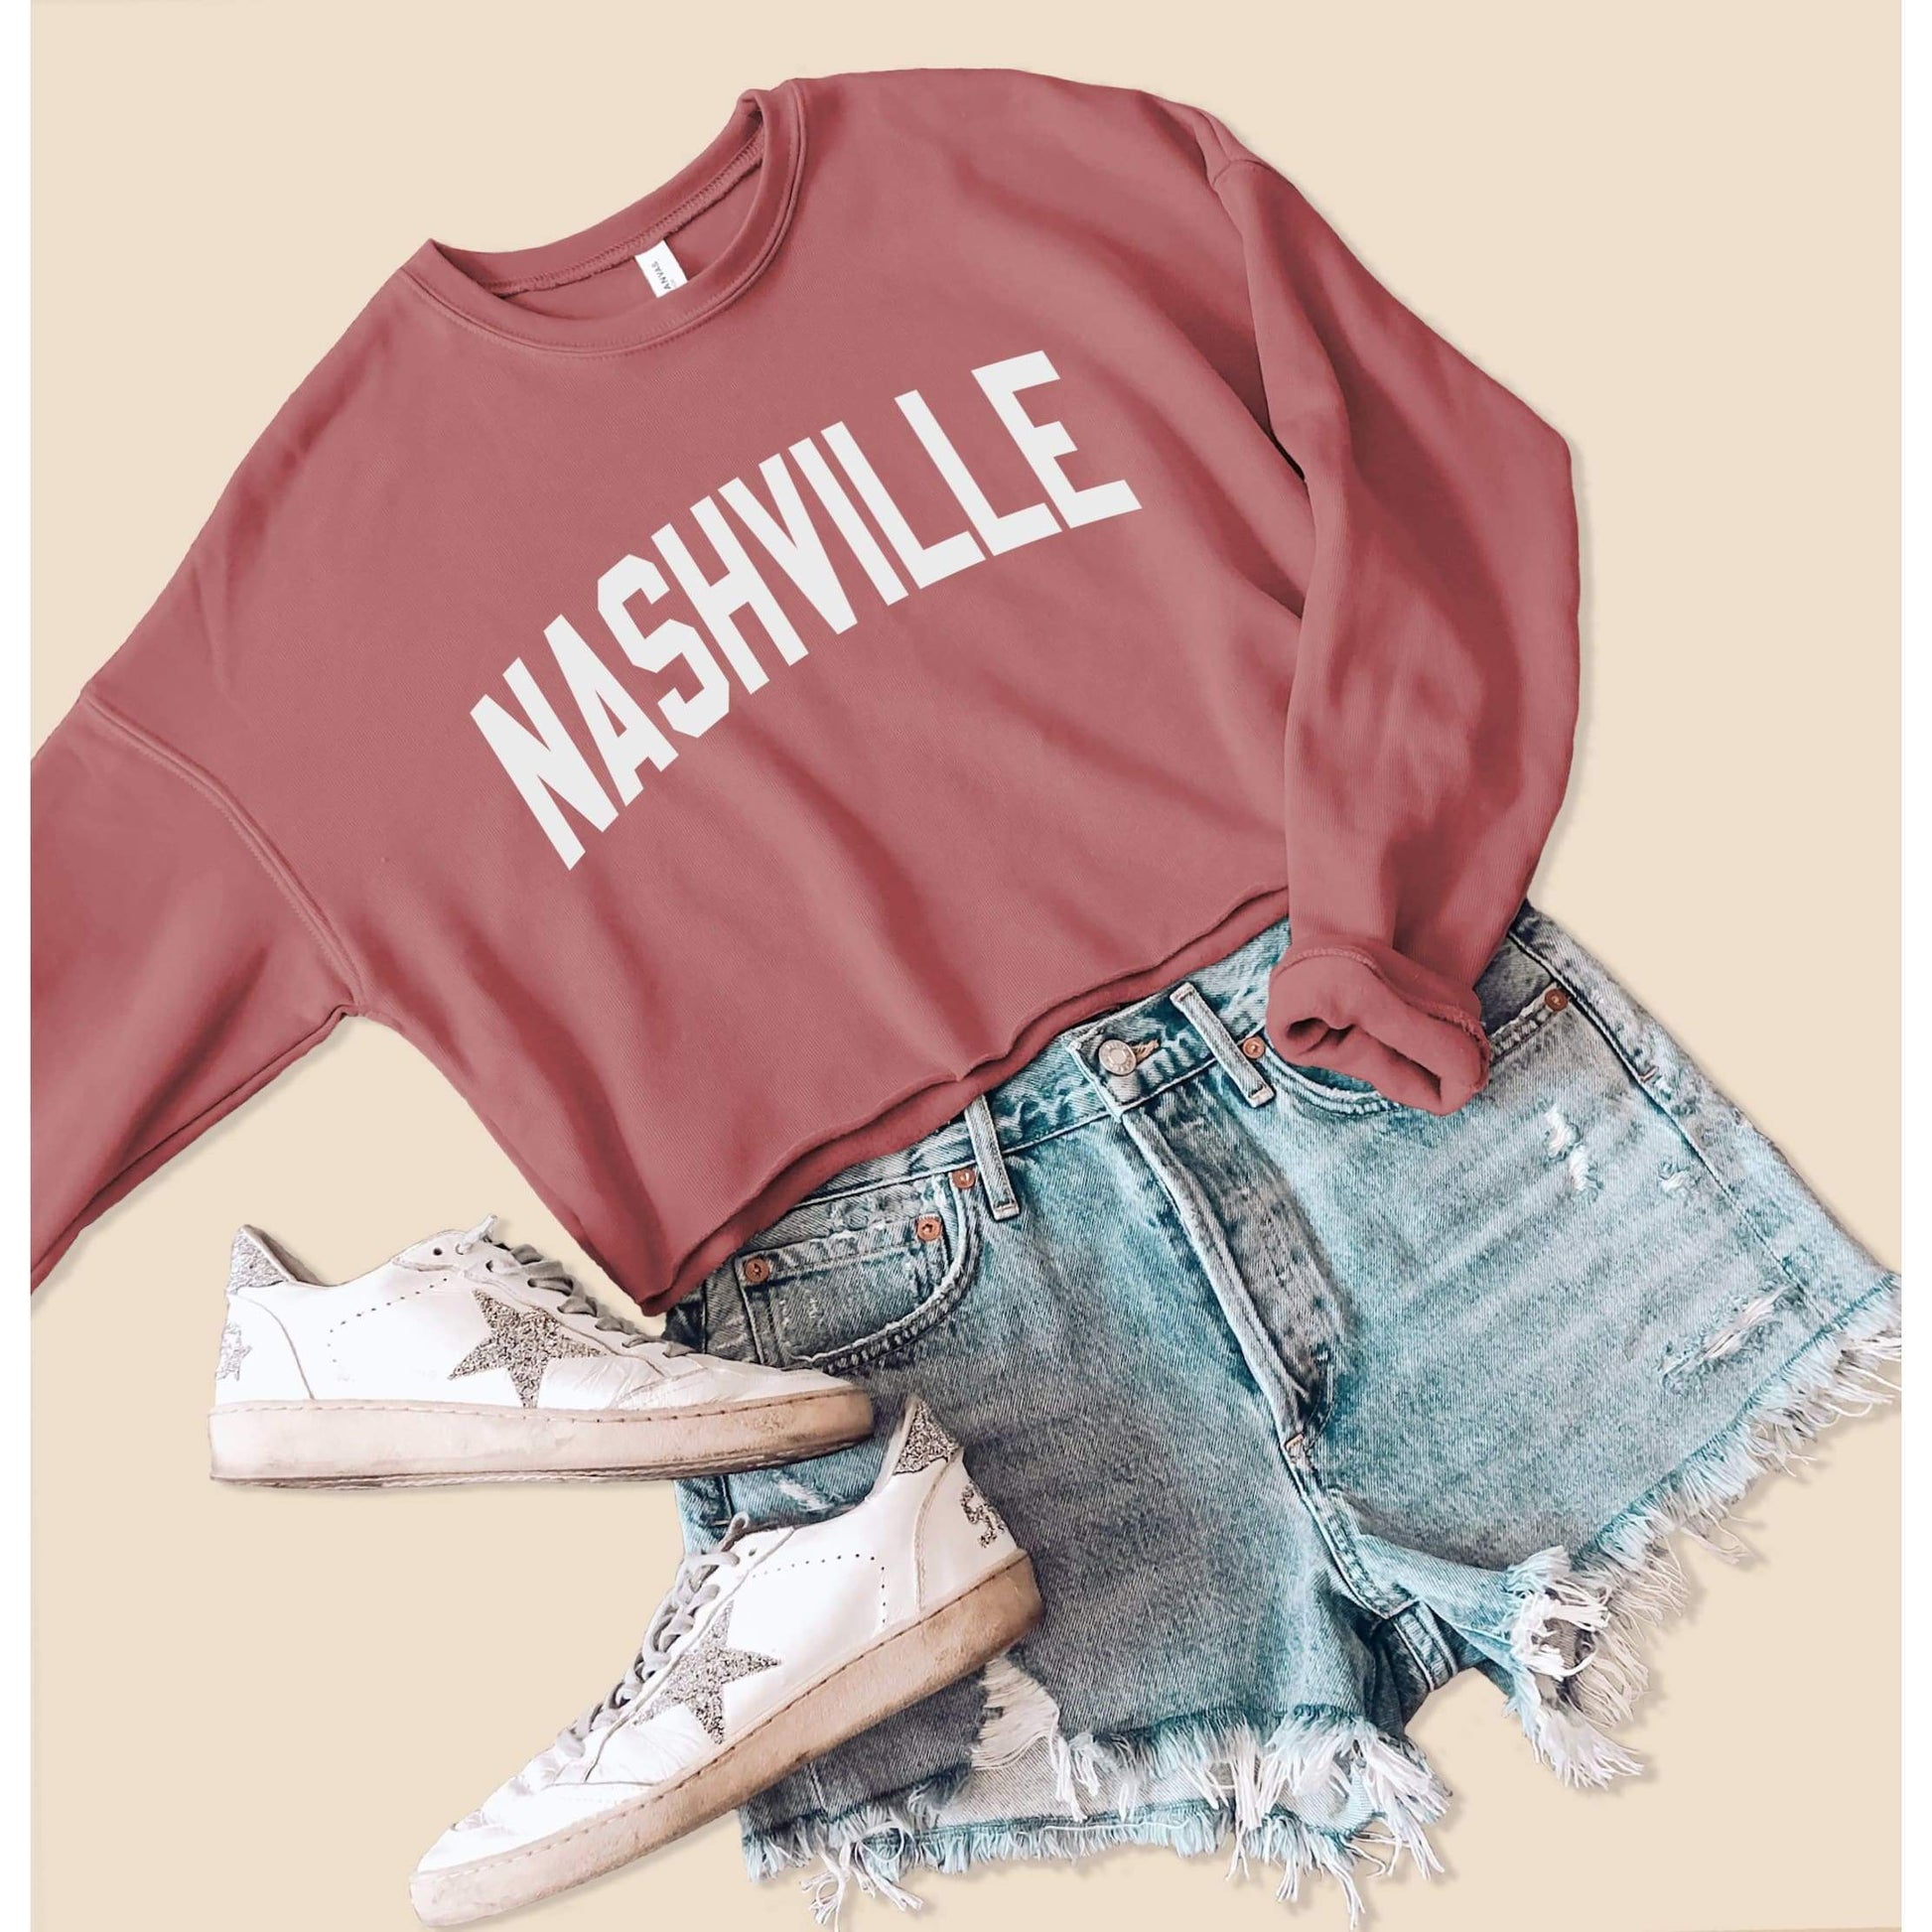 Nashville Cropped Sweatshirt - Nashville Sweatshirt - Tennessee Sweatshirts -Nashville Shirt - Fleece Sweater